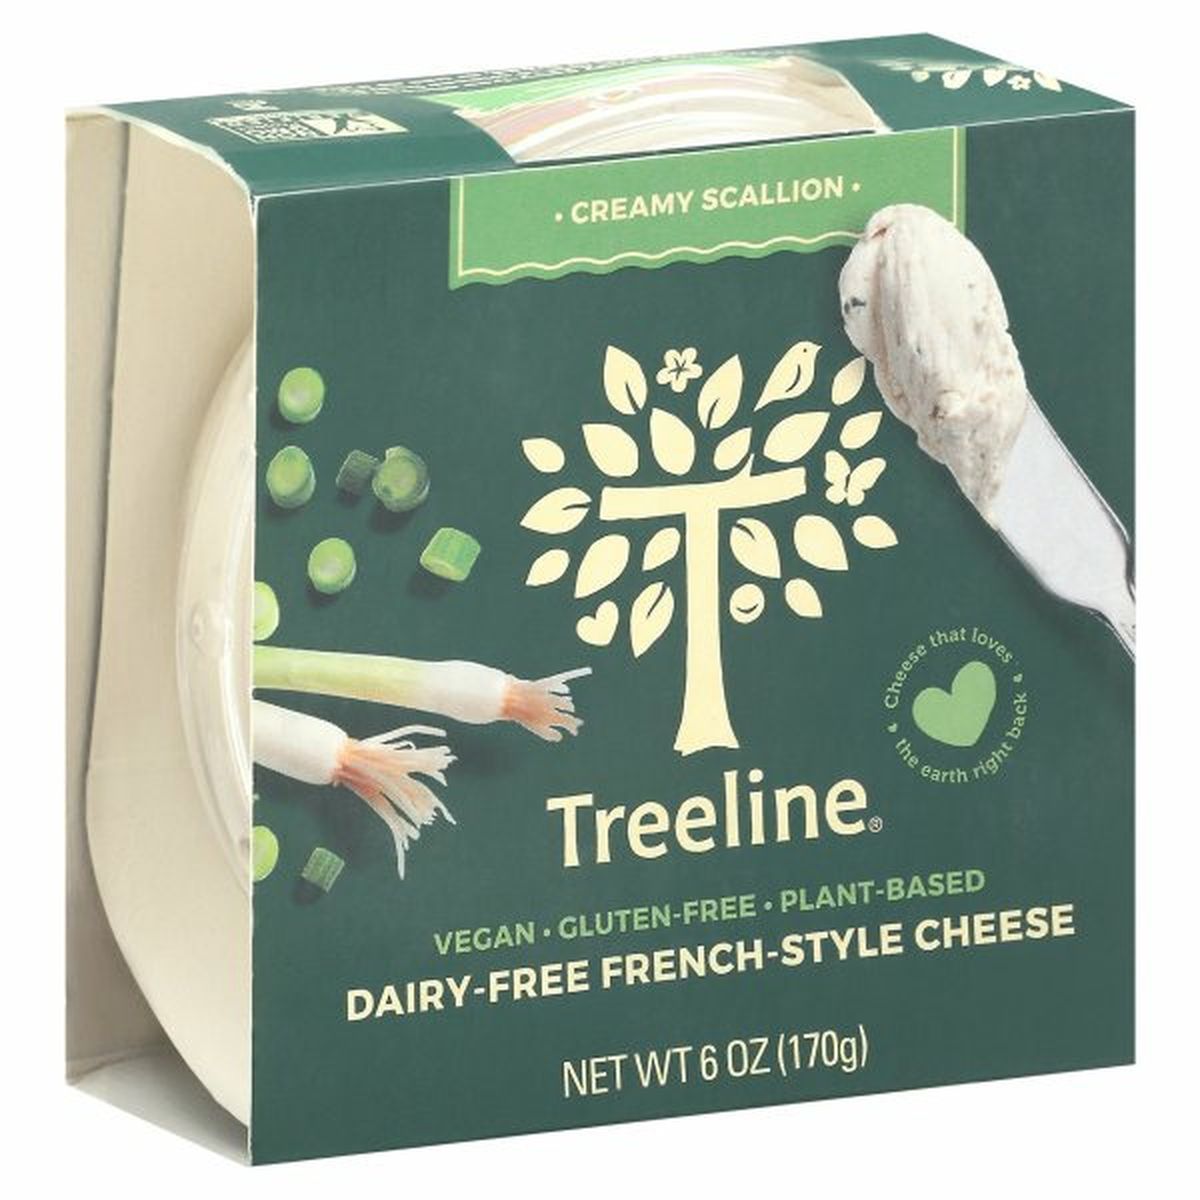 Calories in Treeline Cheese, Creamy Scallion